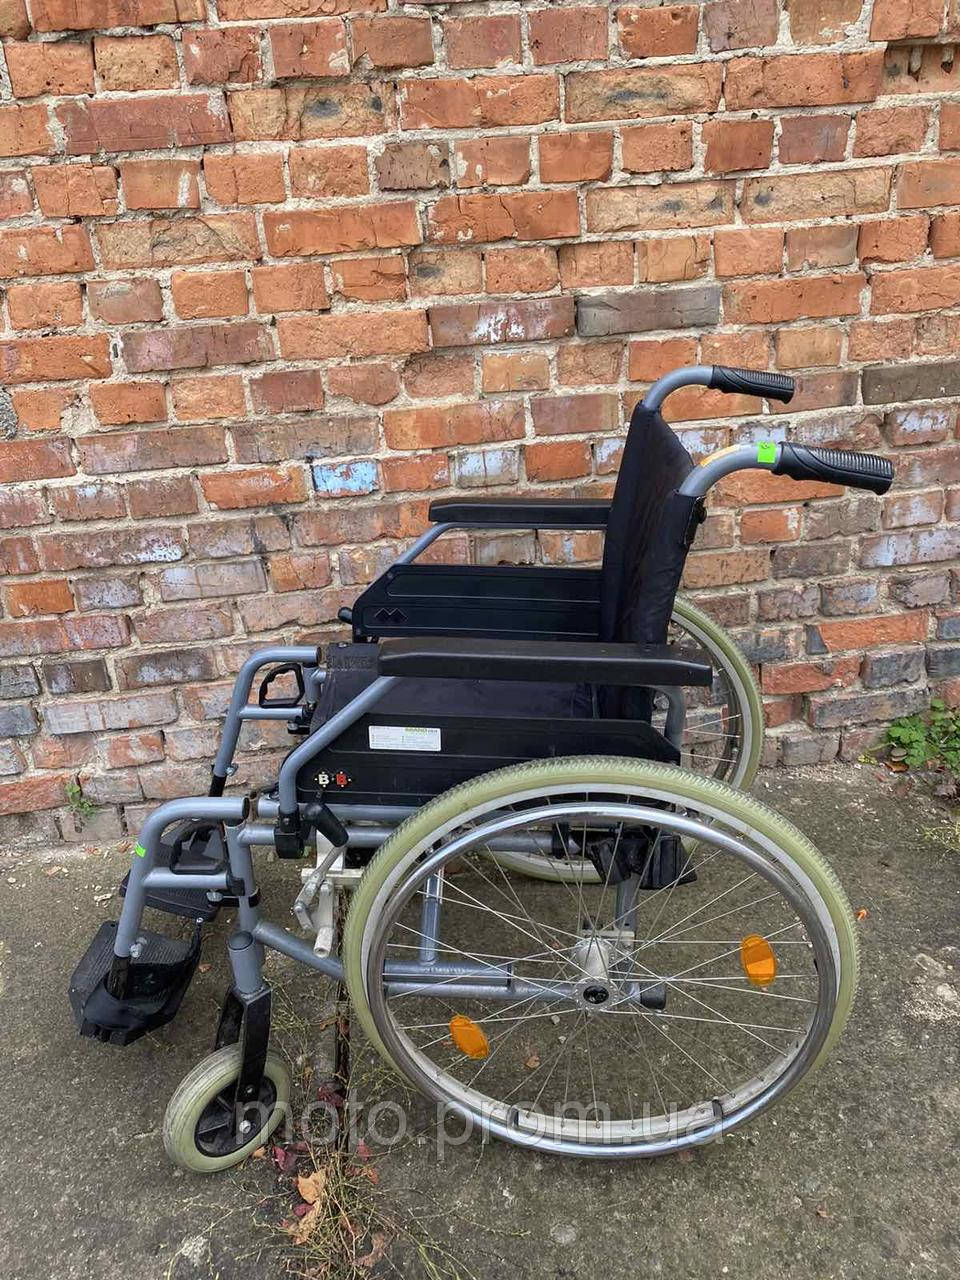 Широка інвалідна коляска Mesteca без підніжок ширина сидіння 48 см б/у без підніжок, фото 1